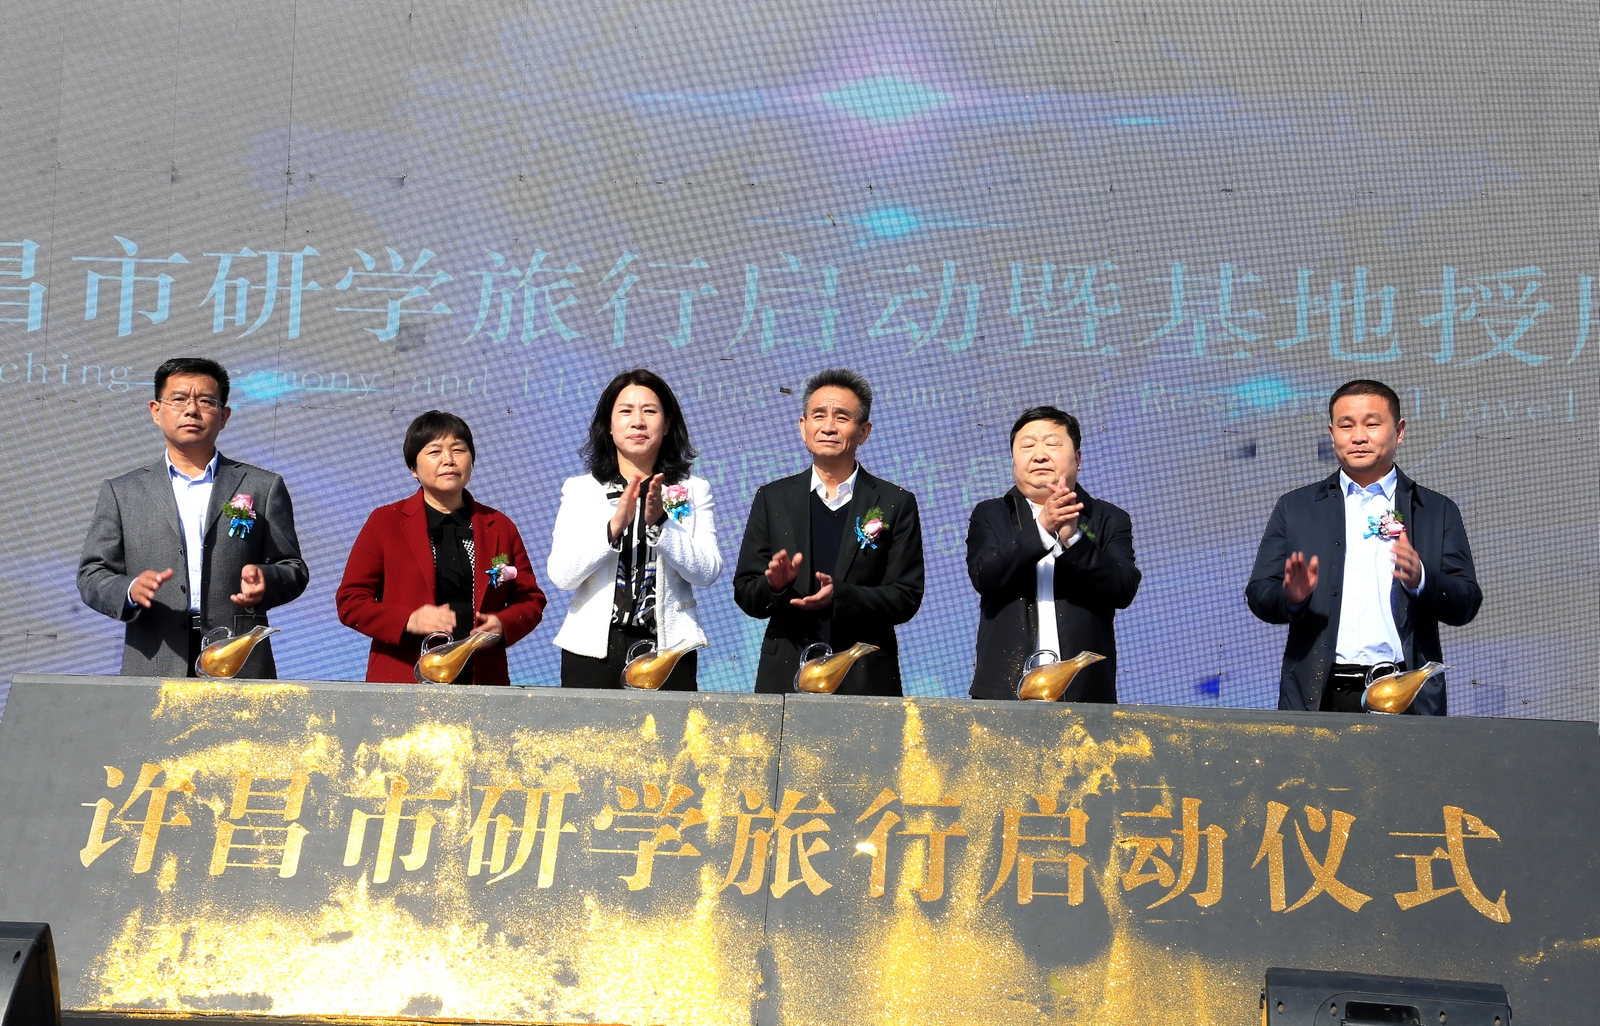 许昌市研学旅行启动暨授牌仪式在瑞贝卡欢乐园隆重举行！